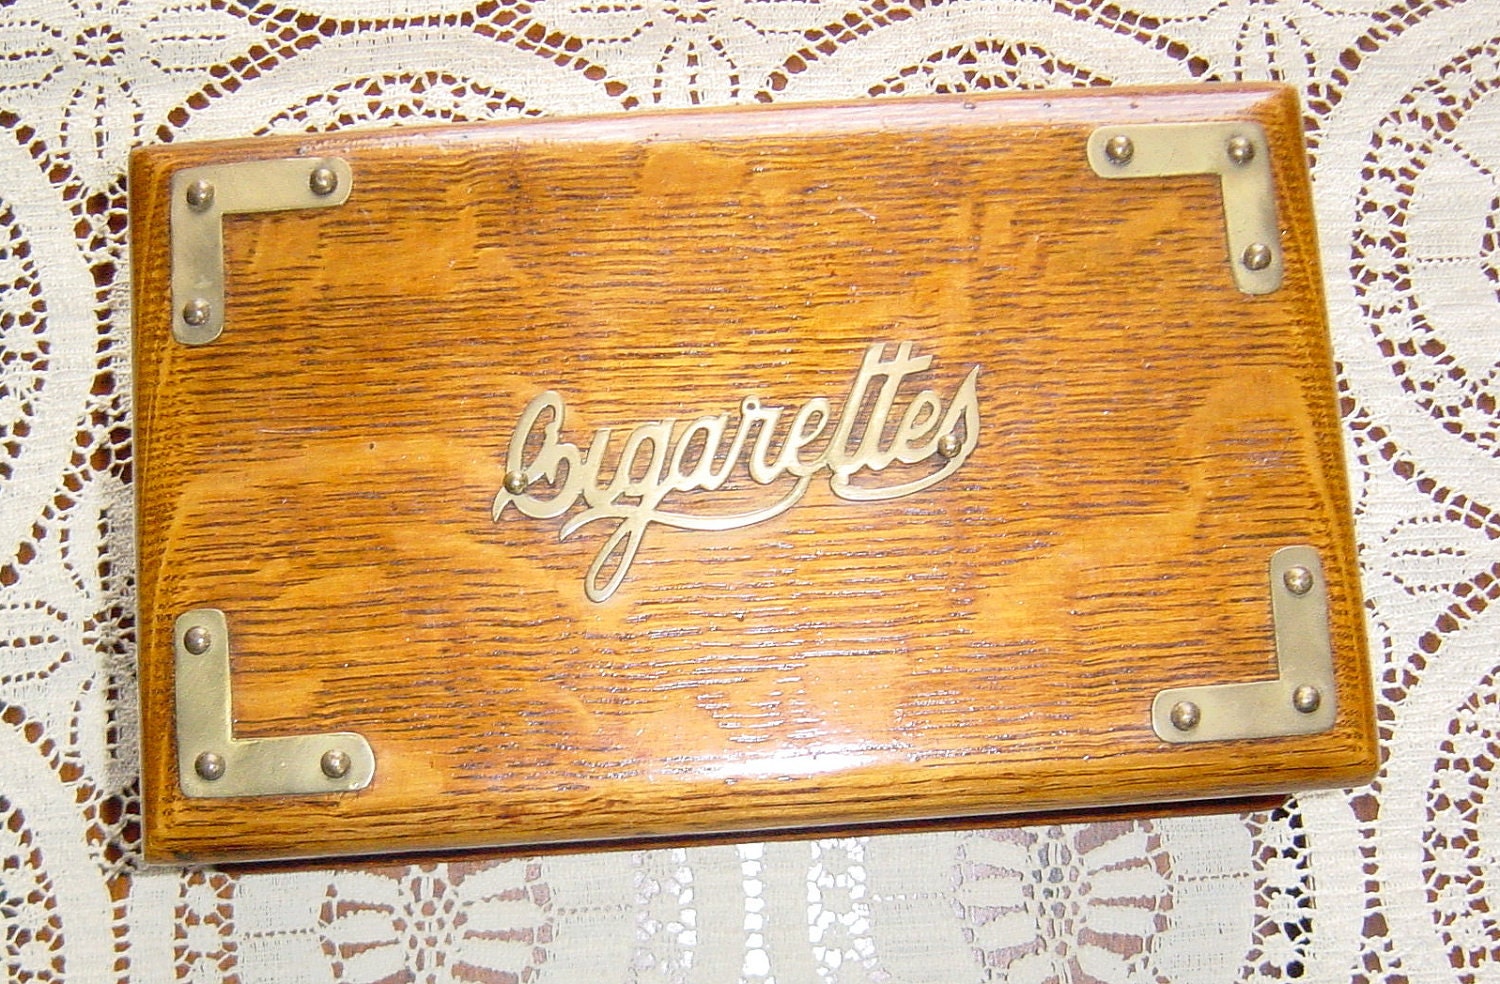 Wooden Cigarette Boxes